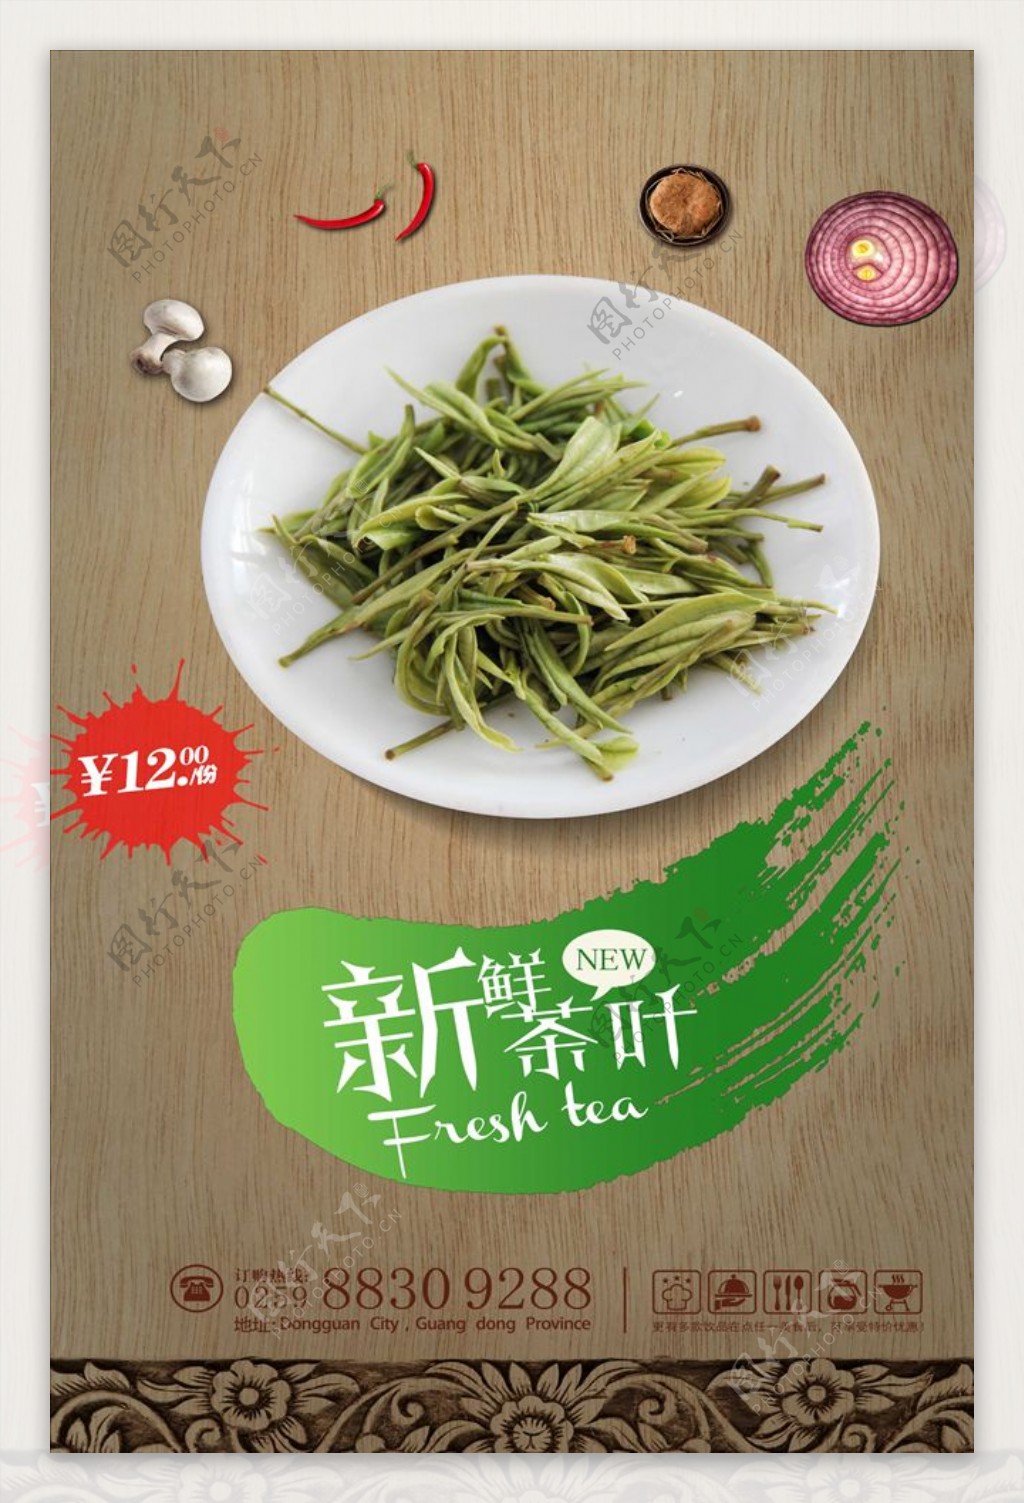 高清茶文化宣传海报模板